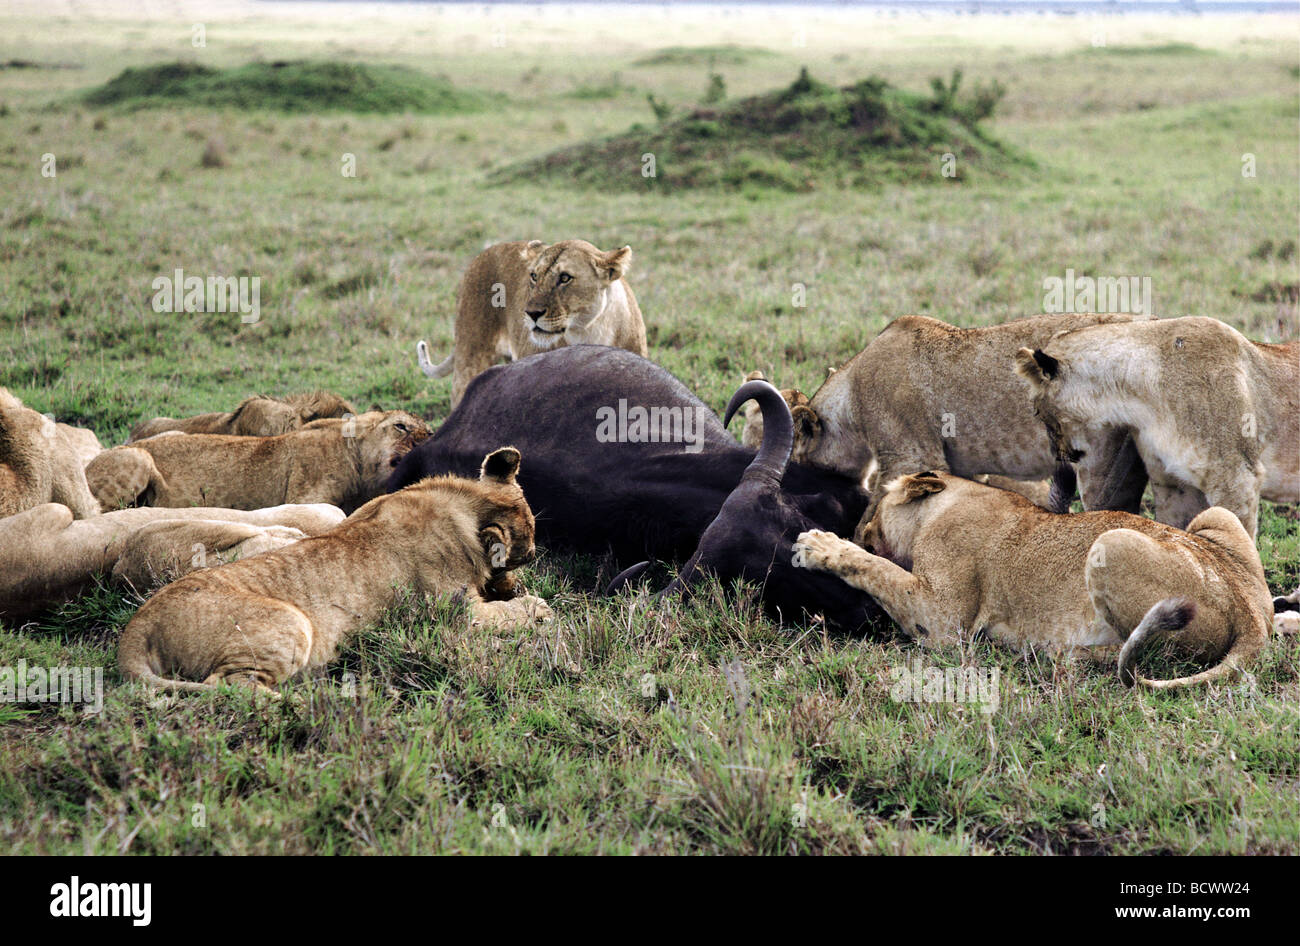 Pride of Lions lionnes et leurs petits se nourrissent de carcasses de bison fraîchement killes Masai Mara National Reserve Kenya Afrique de l'Est Banque D'Images